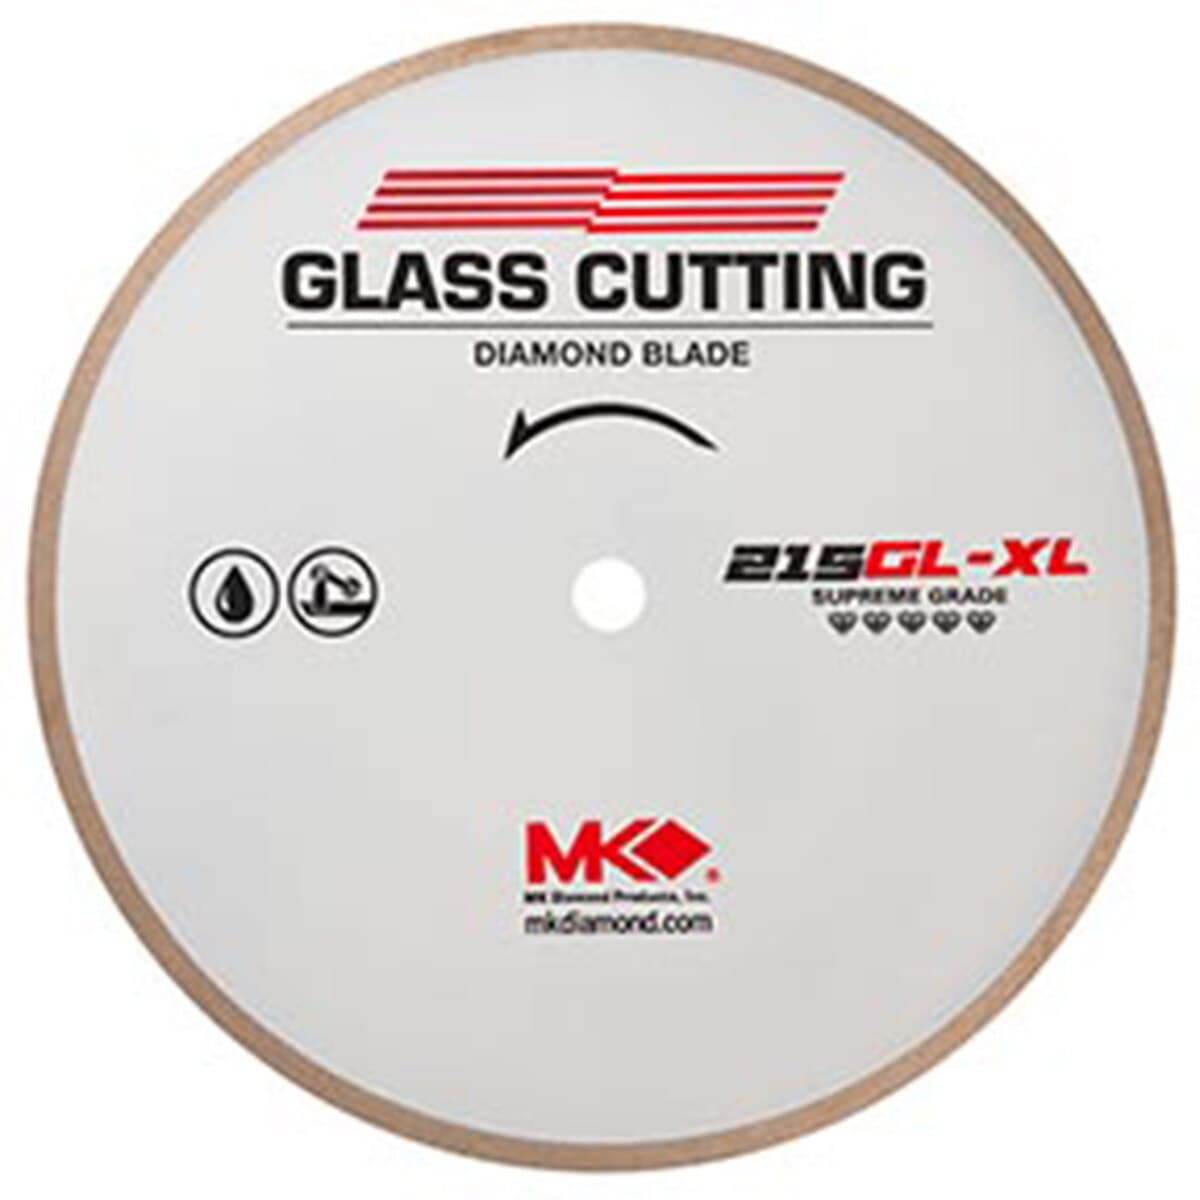 MK-215GL-XL Glass Metal Bond Blades (Supreme) - MK Diamond